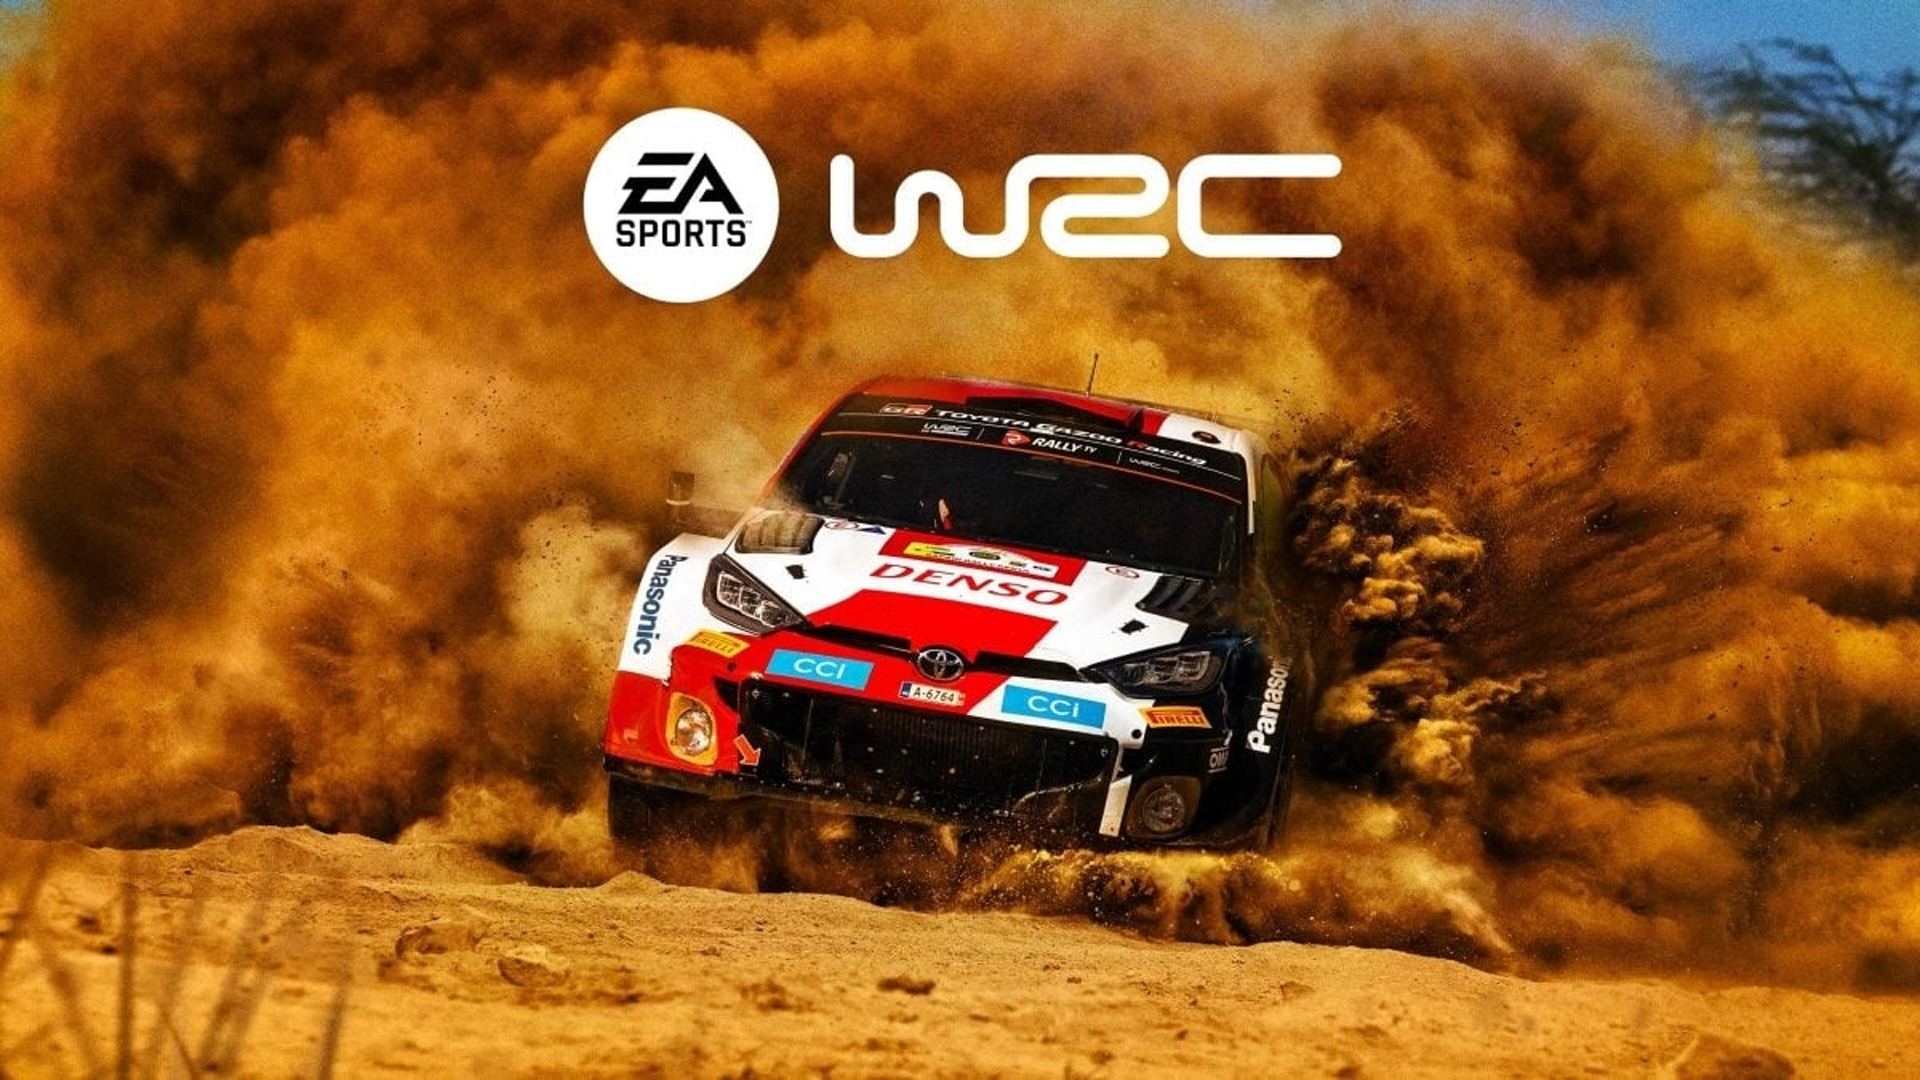 WRC screenshot 61722